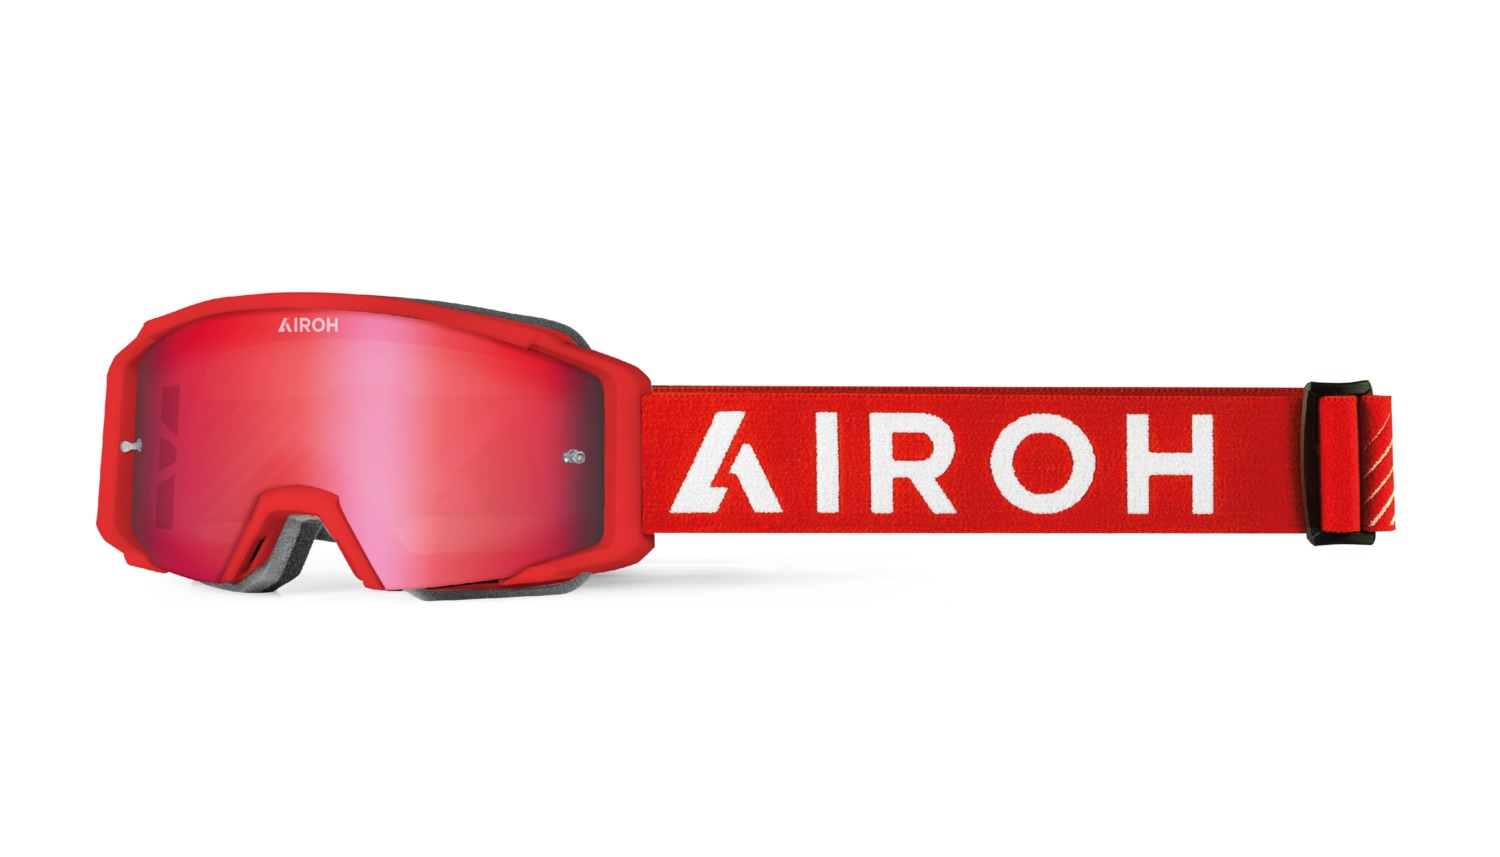 brýle BLAST XR1, AIROH (červená matná)